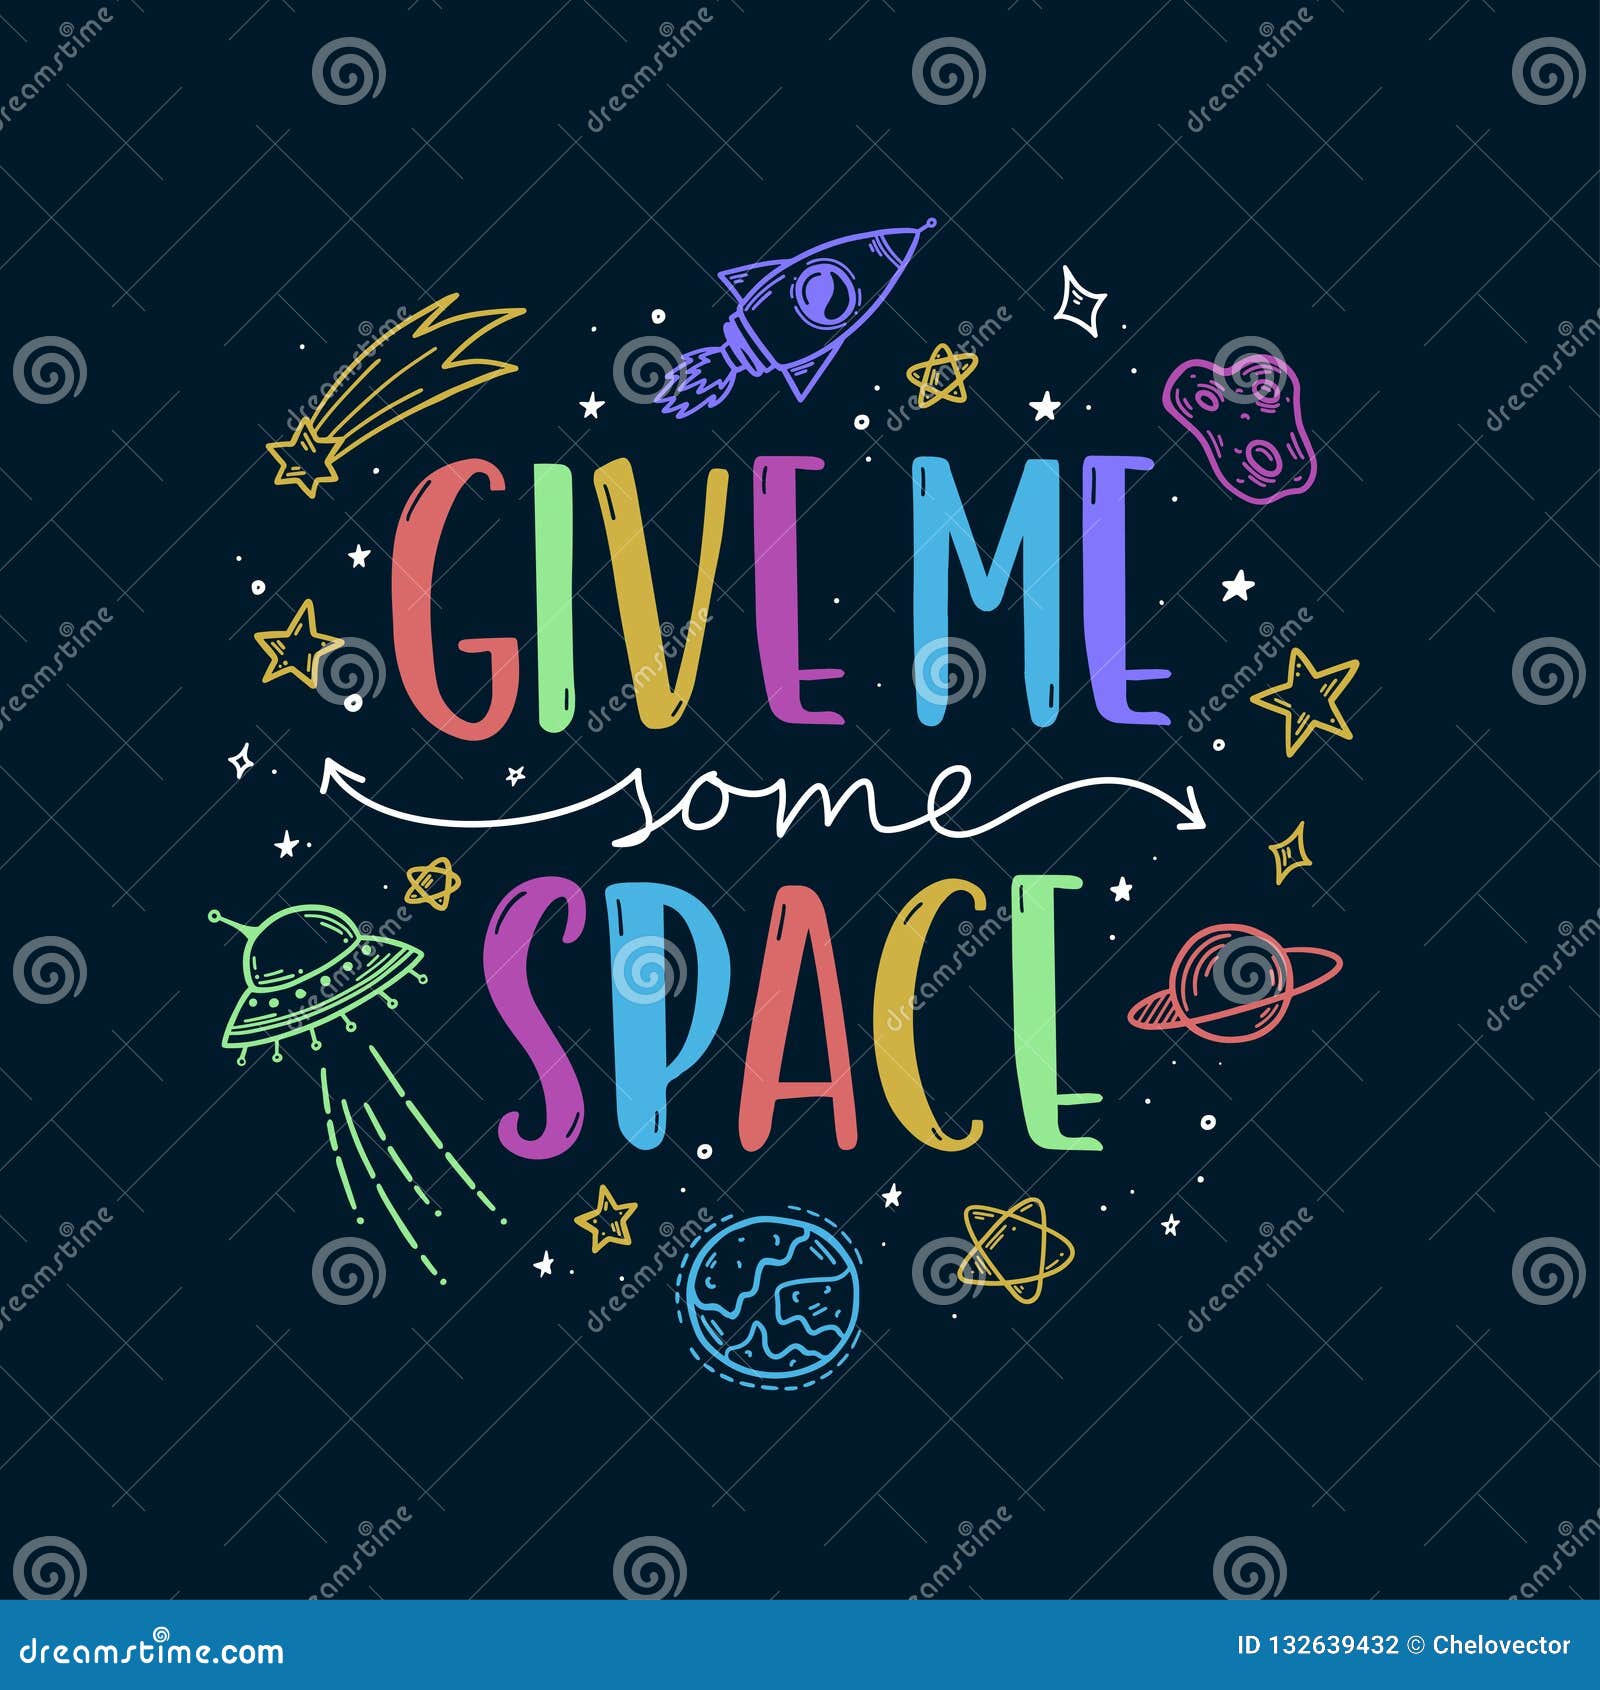 space theme doodle slogan.  .